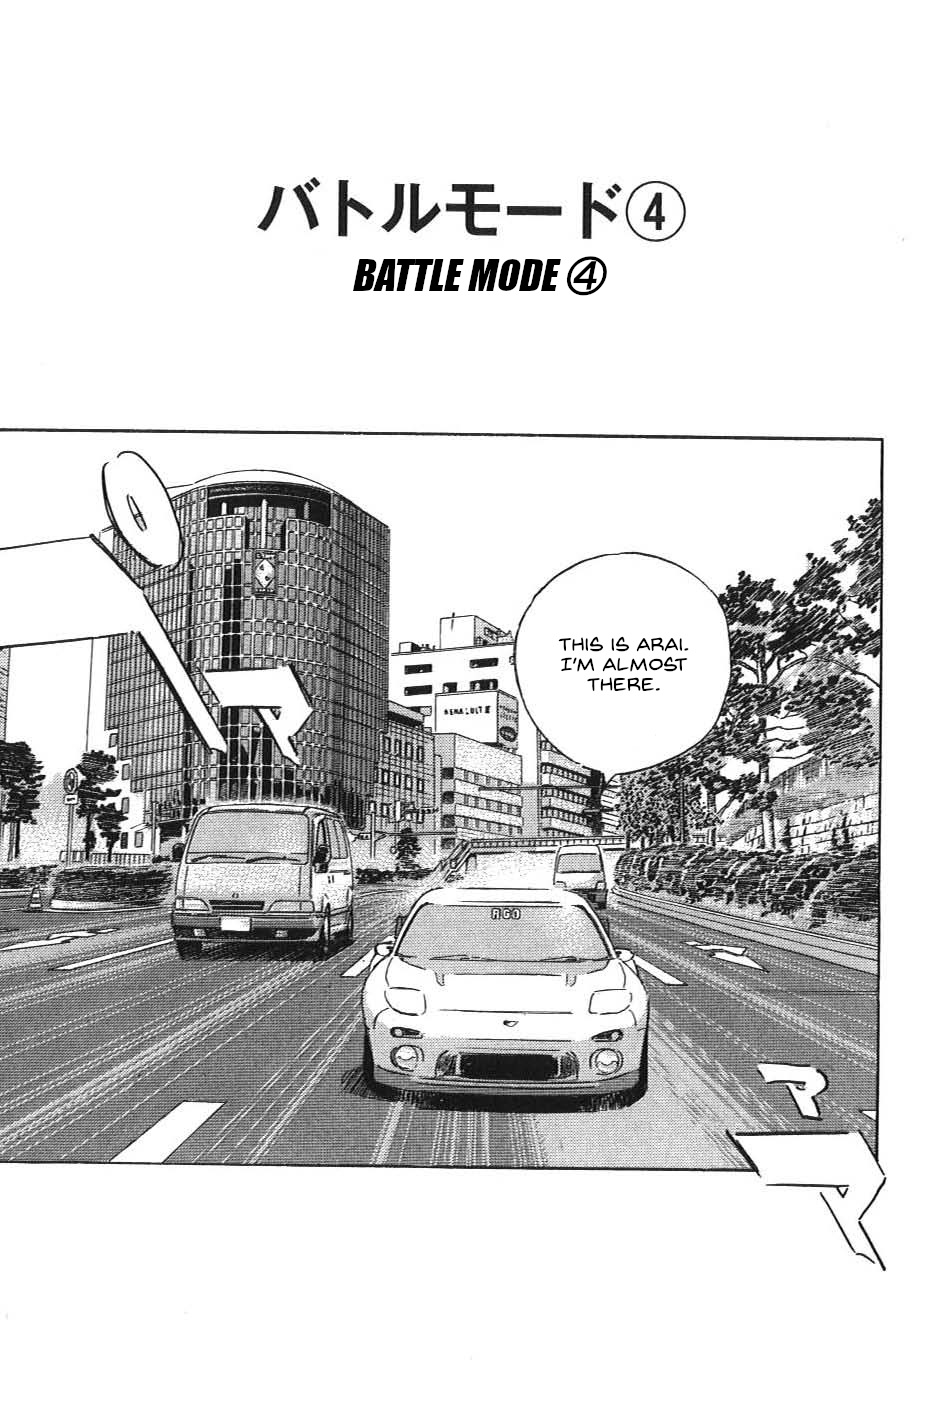 Wangan Midnight: C1 Runner Vol.2 Chapter 21: Battle Mode ④ - Picture 1